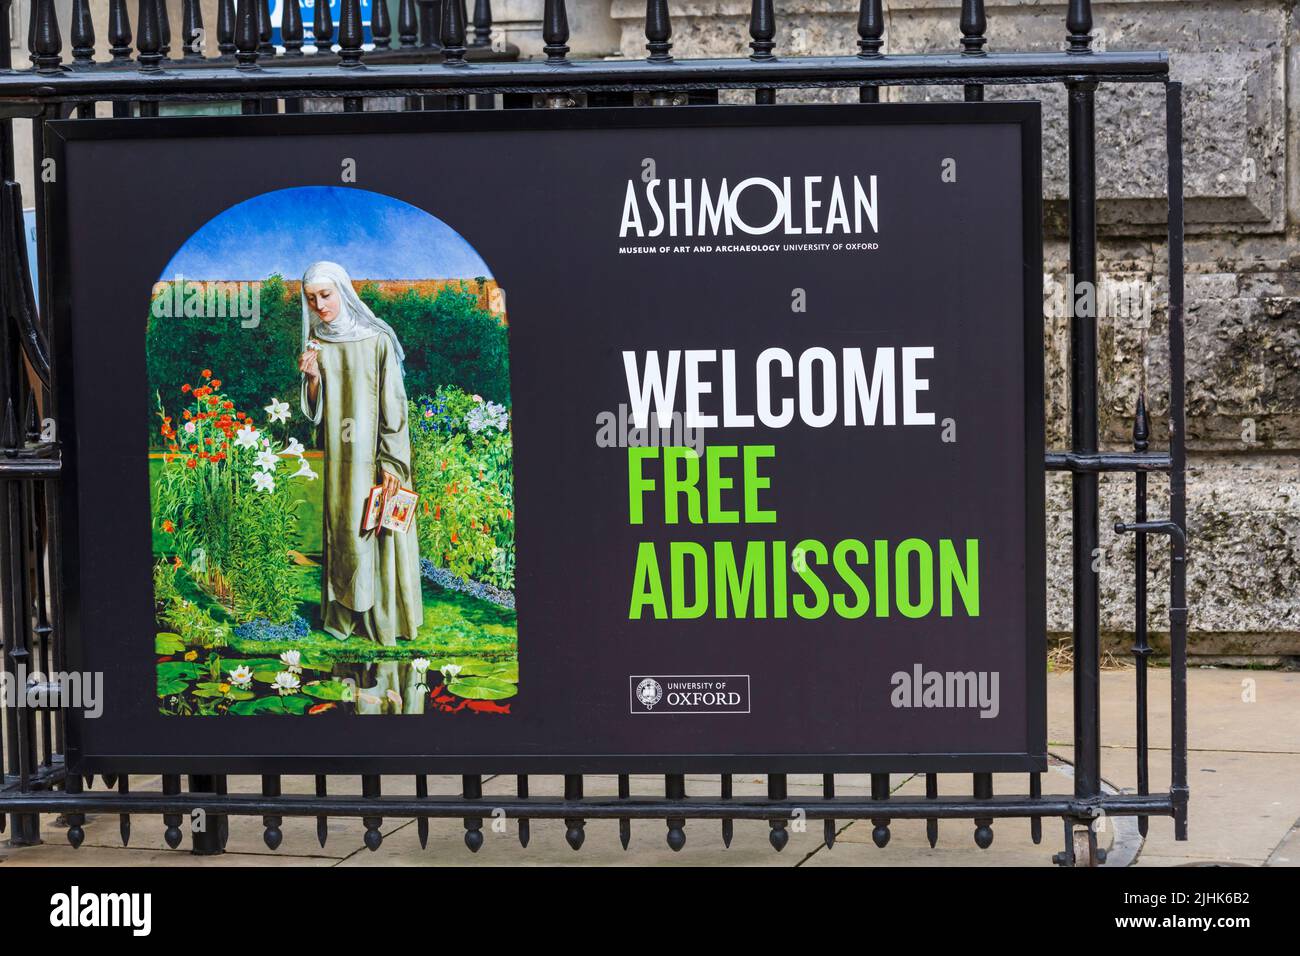 L'Ashmolean Museum of Art and Archaeology University of Oxford è l'ingresso gratuito a Oxford, Oxfordshire UK, in una giornata piovosa bagnata ad agosto Foto Stock